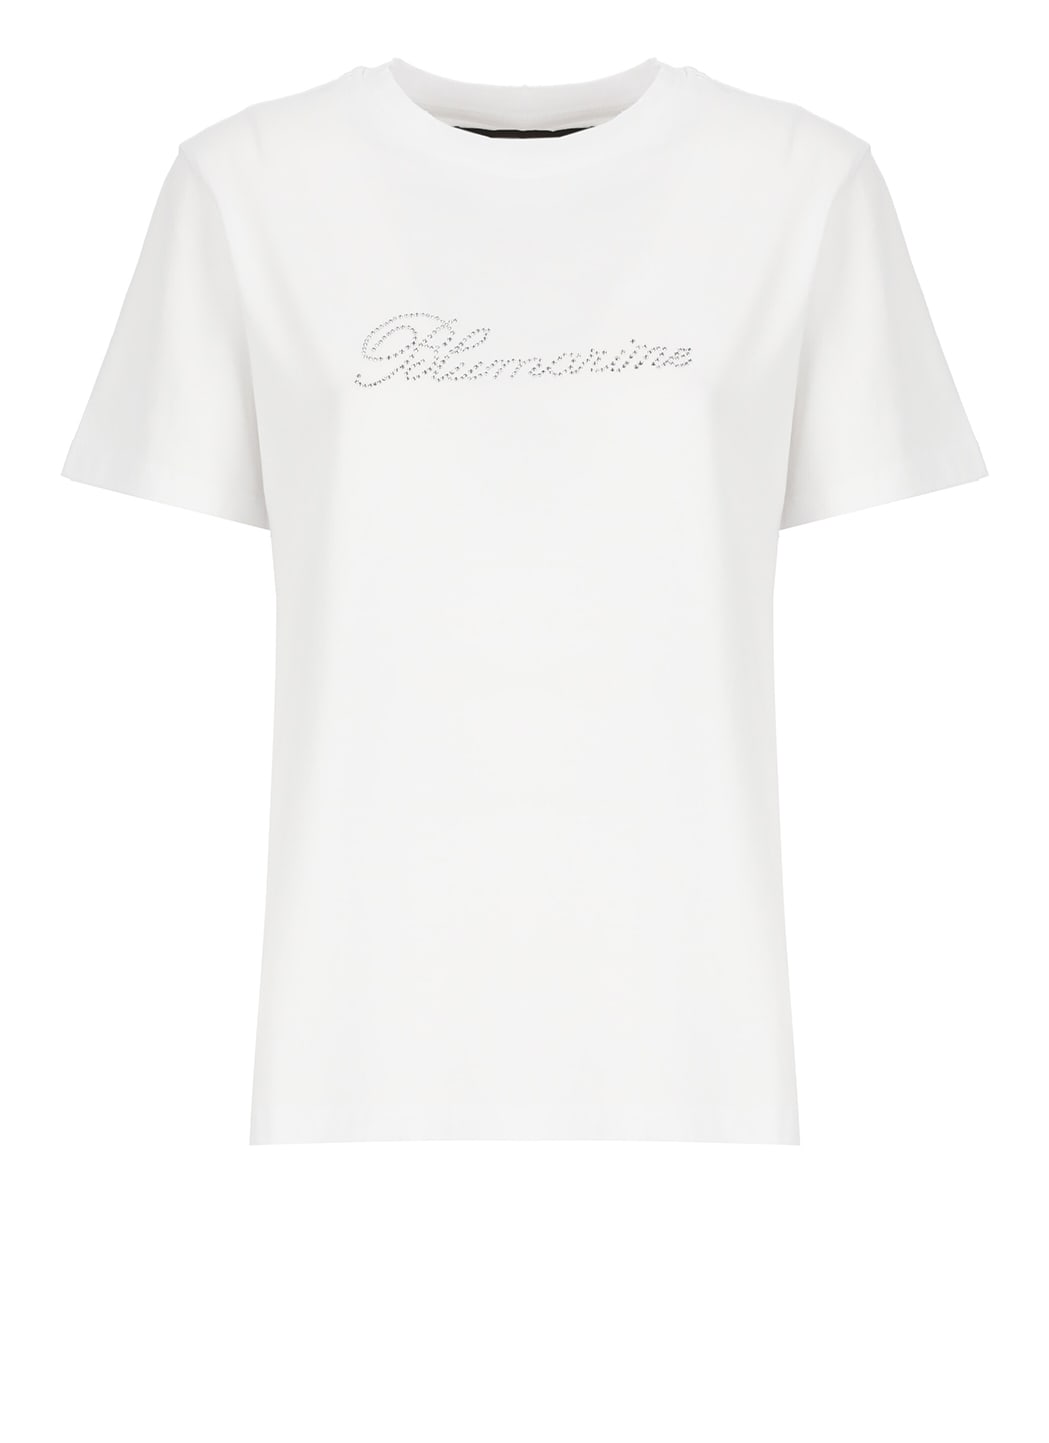 Rhinestones T-shirt